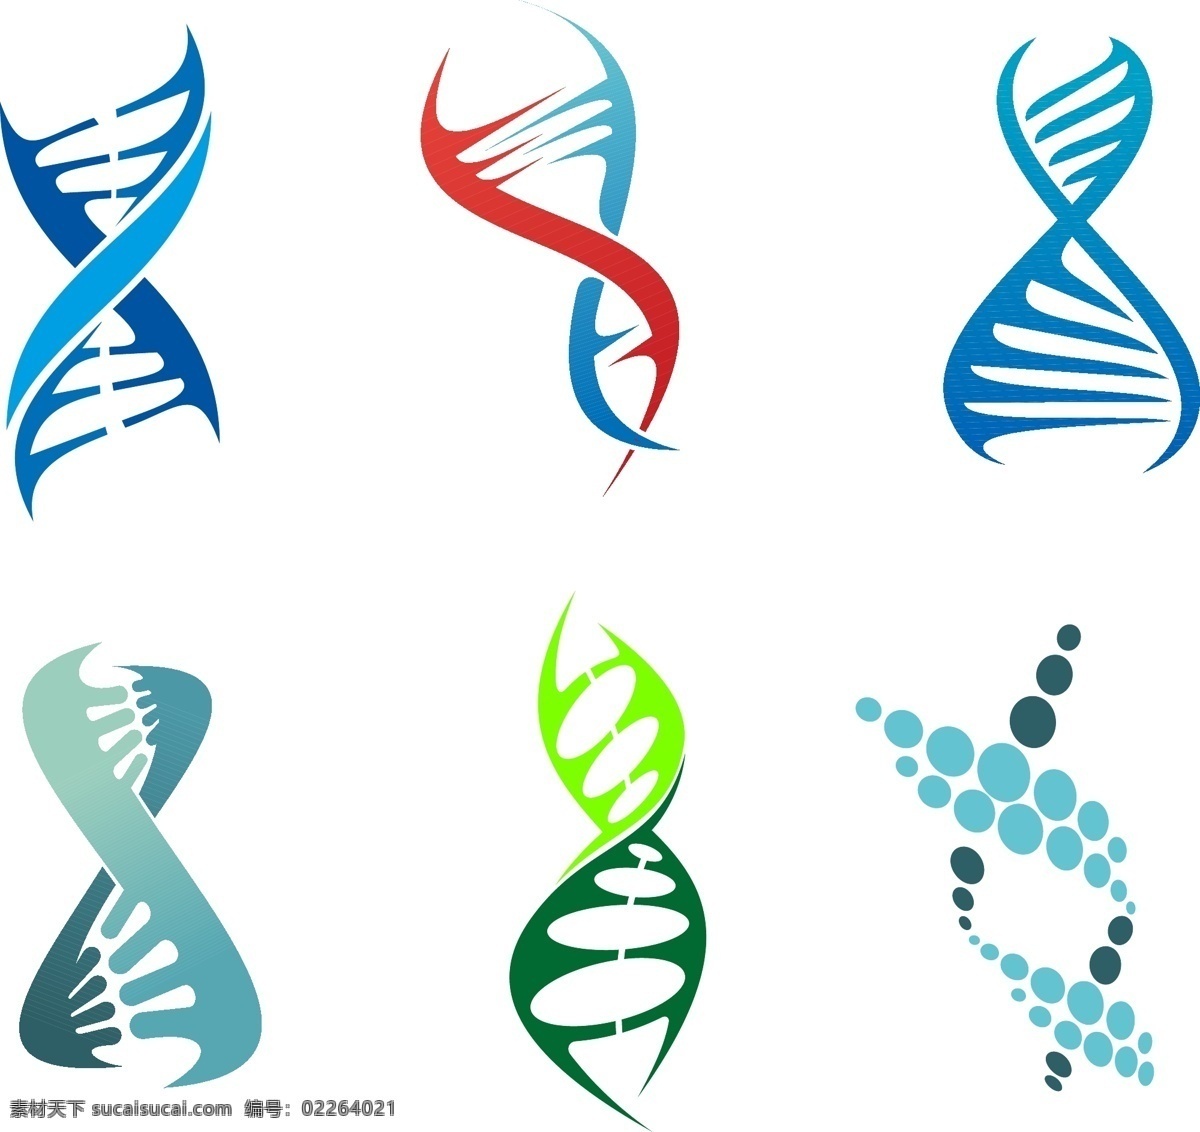 基因dna 分子结构 分子 医疗 医学 染色体 科学实验 结构 矢量 现代科技 科学研究